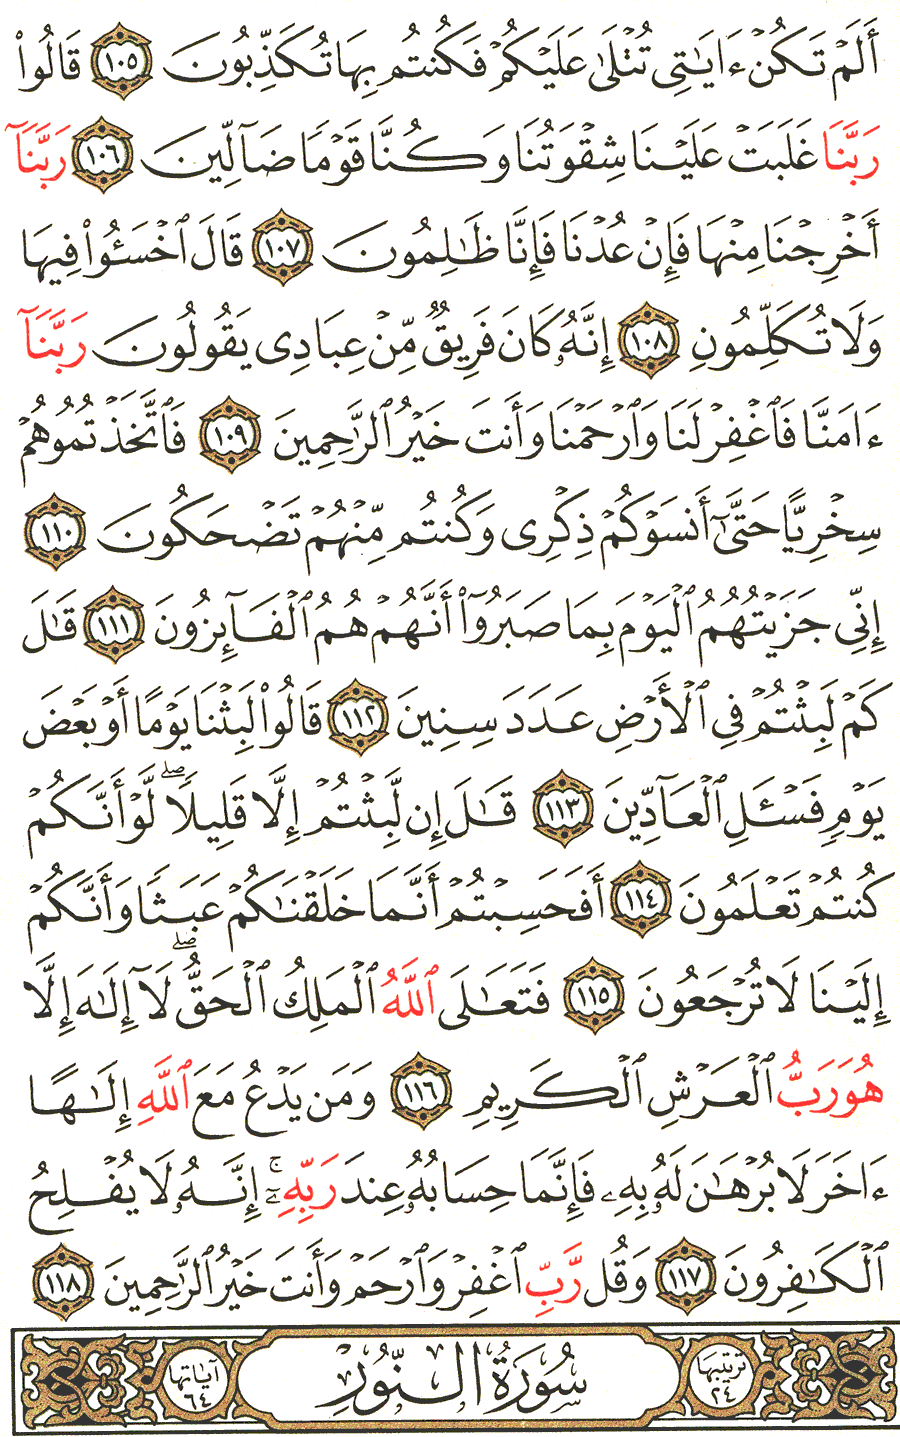 الصفحة رقم 349  من القرآن الكريم مكتوبة من المصحف